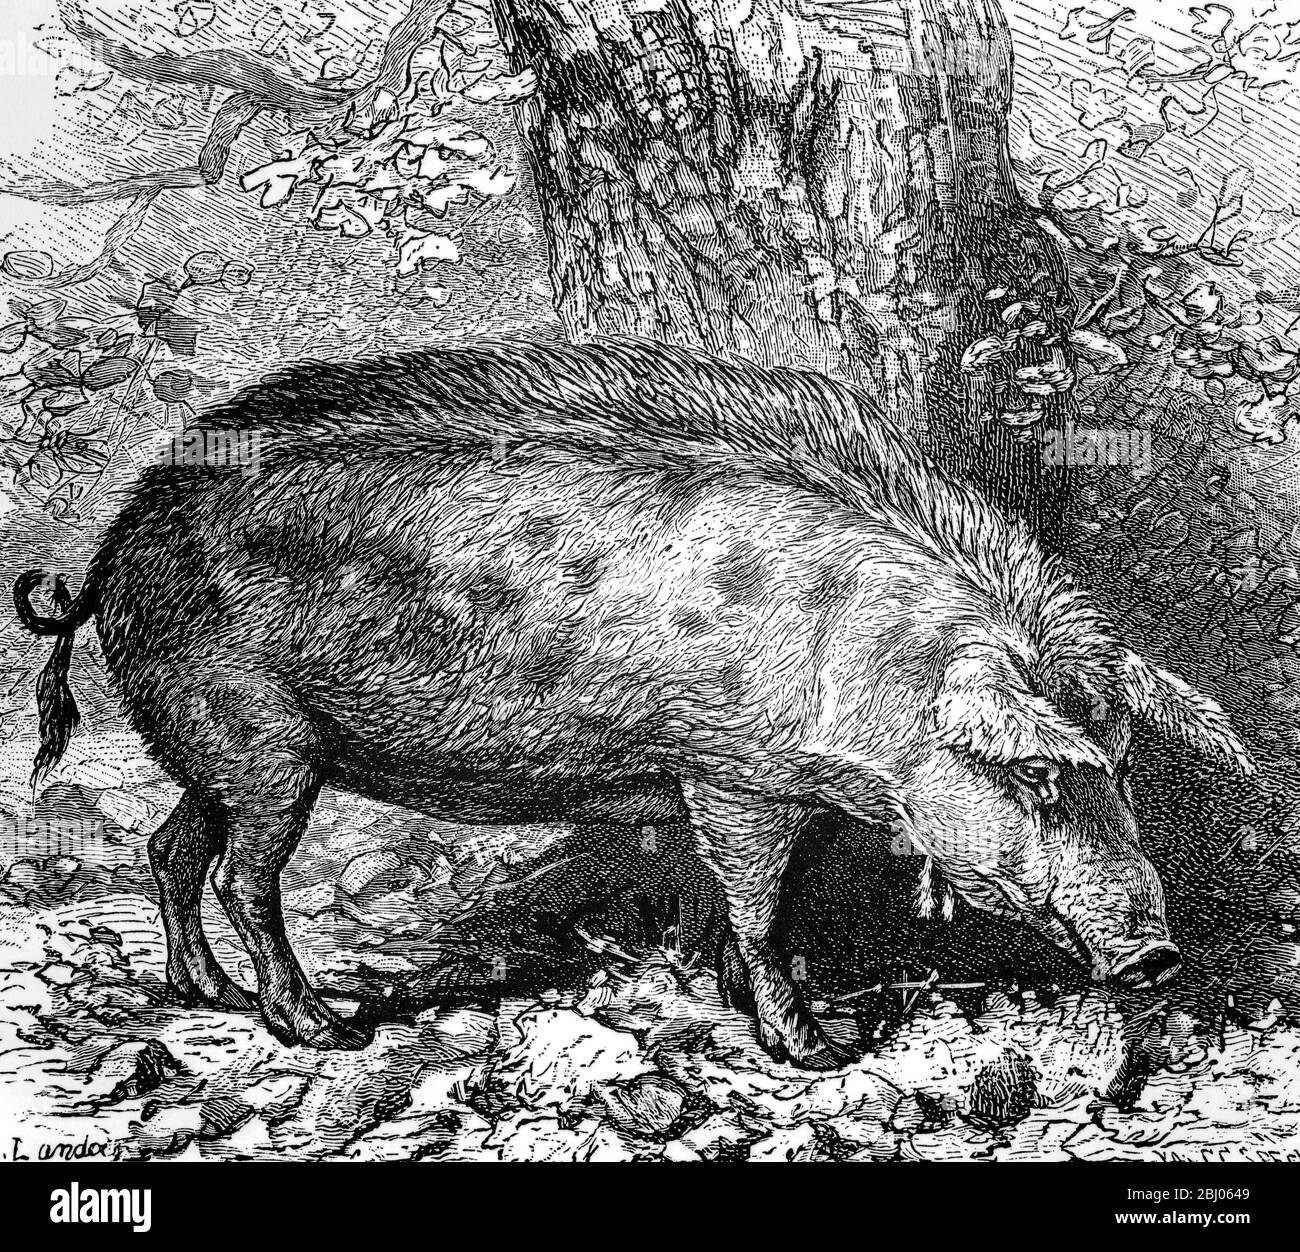 Pig médiéval qui était autrefois à la recherche des bois de chêne de la weald de Kent et Sussex dans le sud de l'Angleterre - sanglier - Banque D'Images